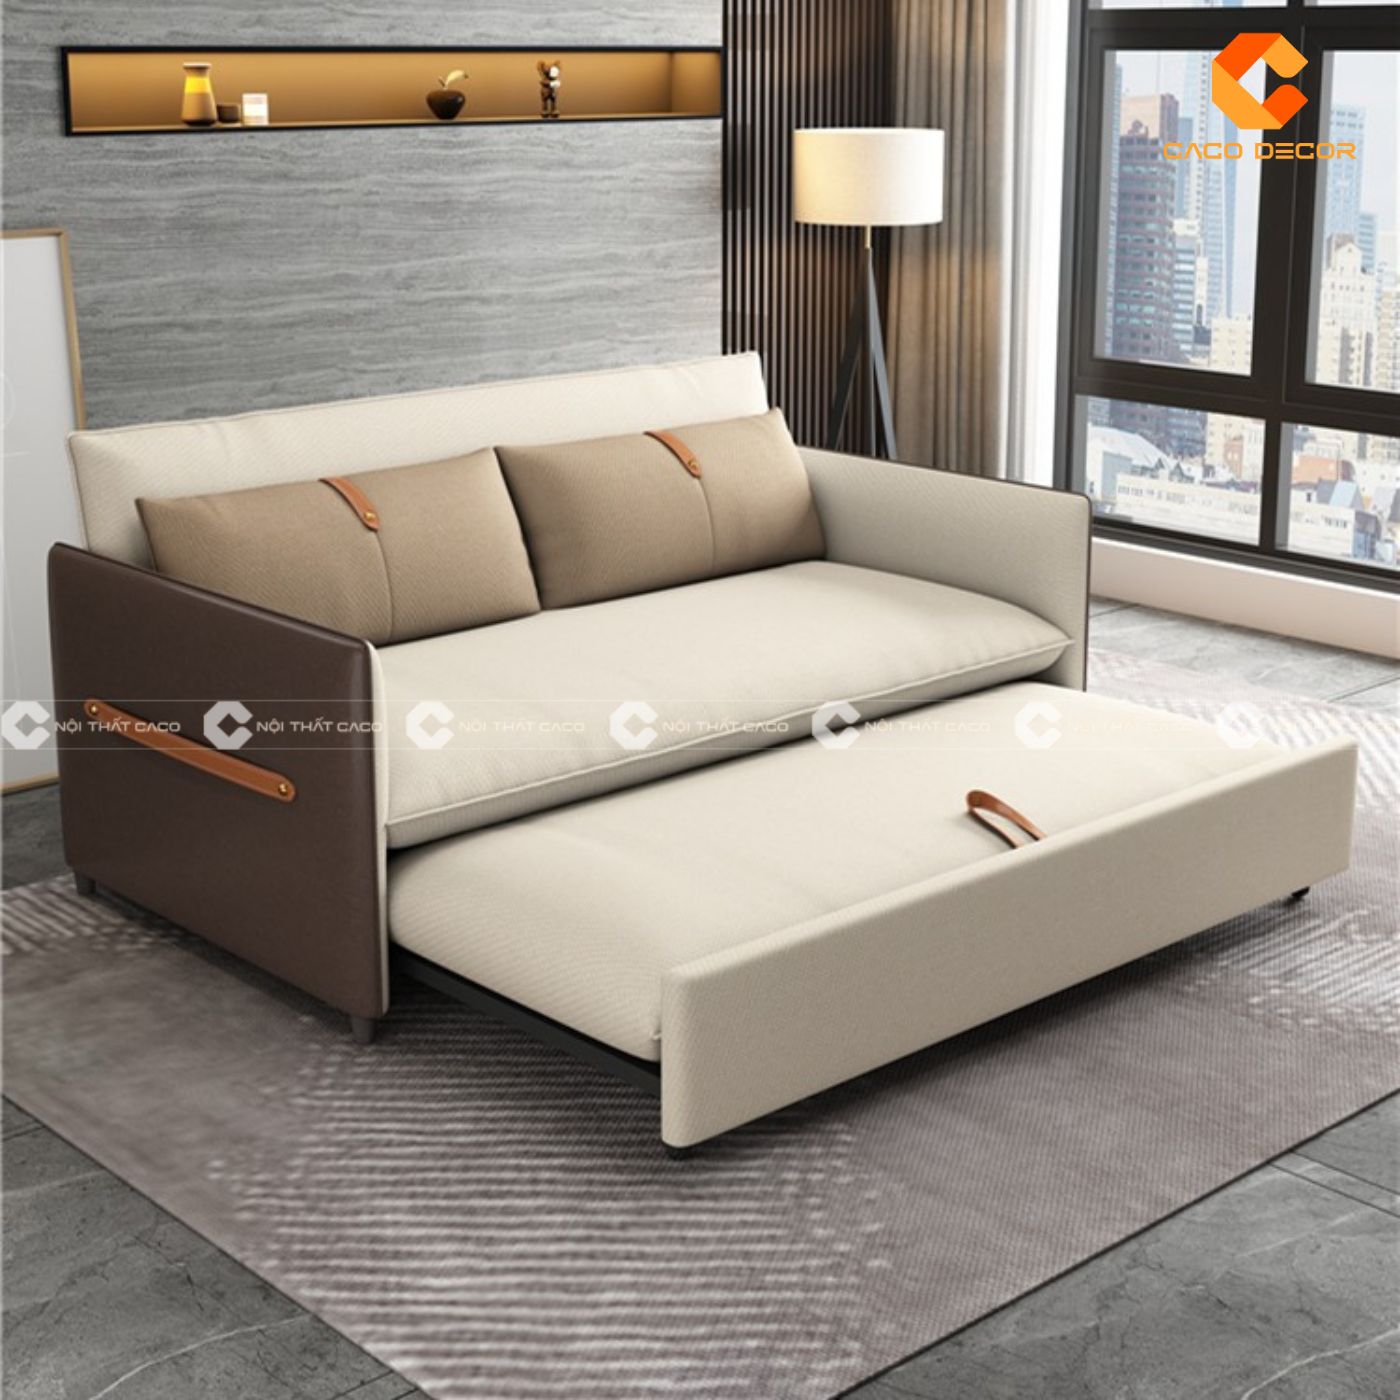 Sofa giường gấp thông minh - món nội thất đa năng, siêu tiện ích 8